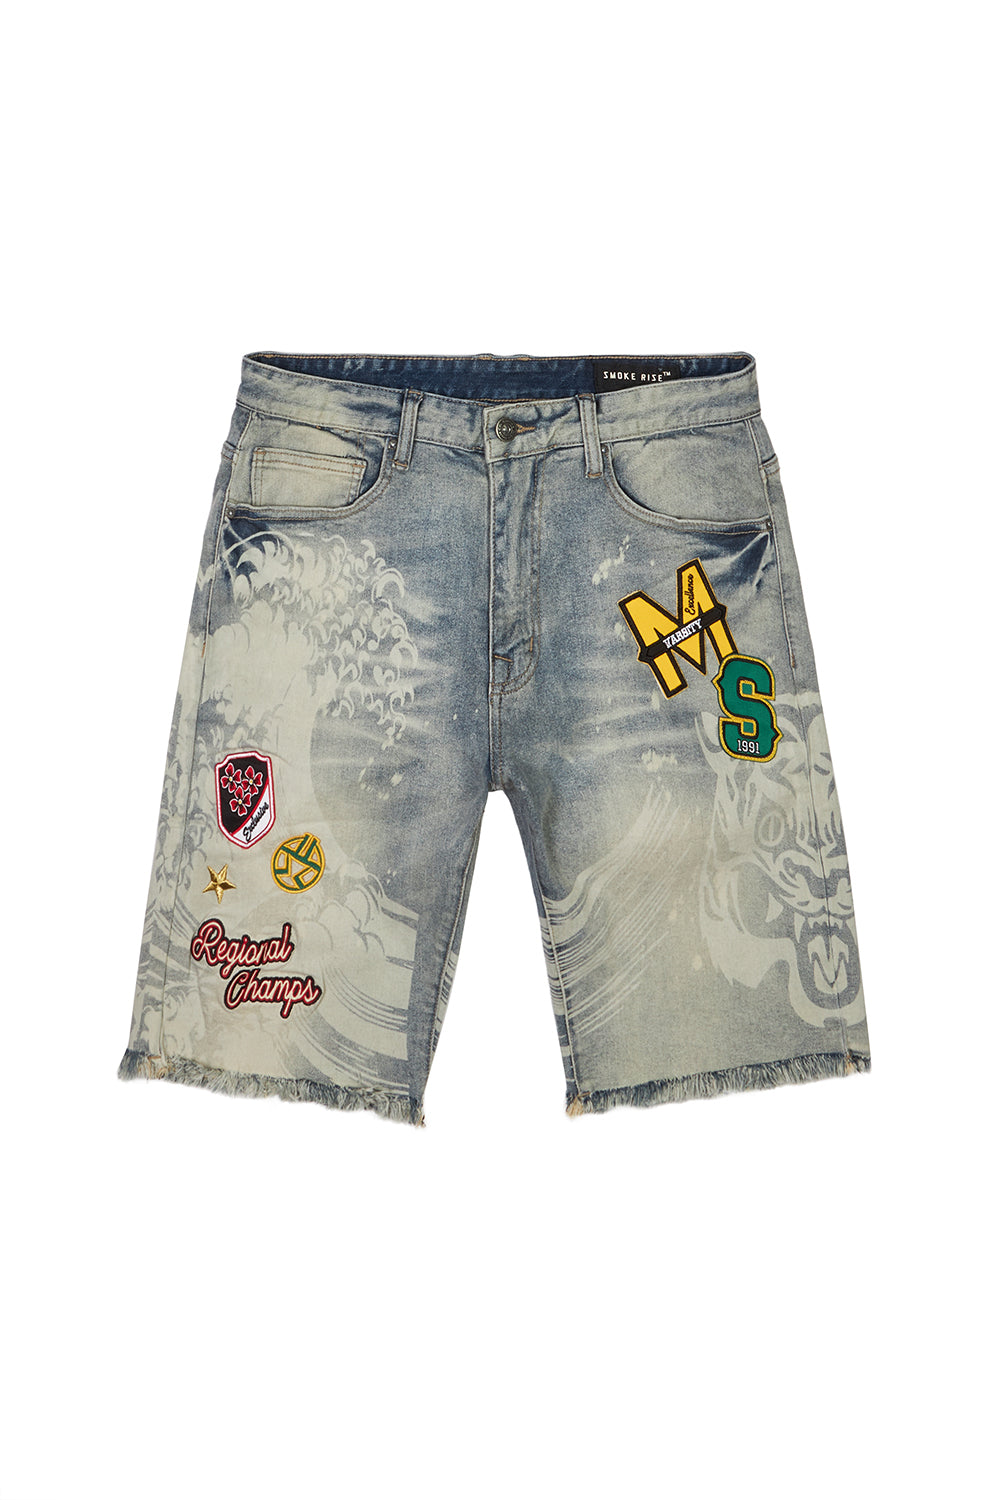 Jeans Short Pants Casual Shorts Rip Jeans Frayed Denim Shorts Men shorts  Short | eBay